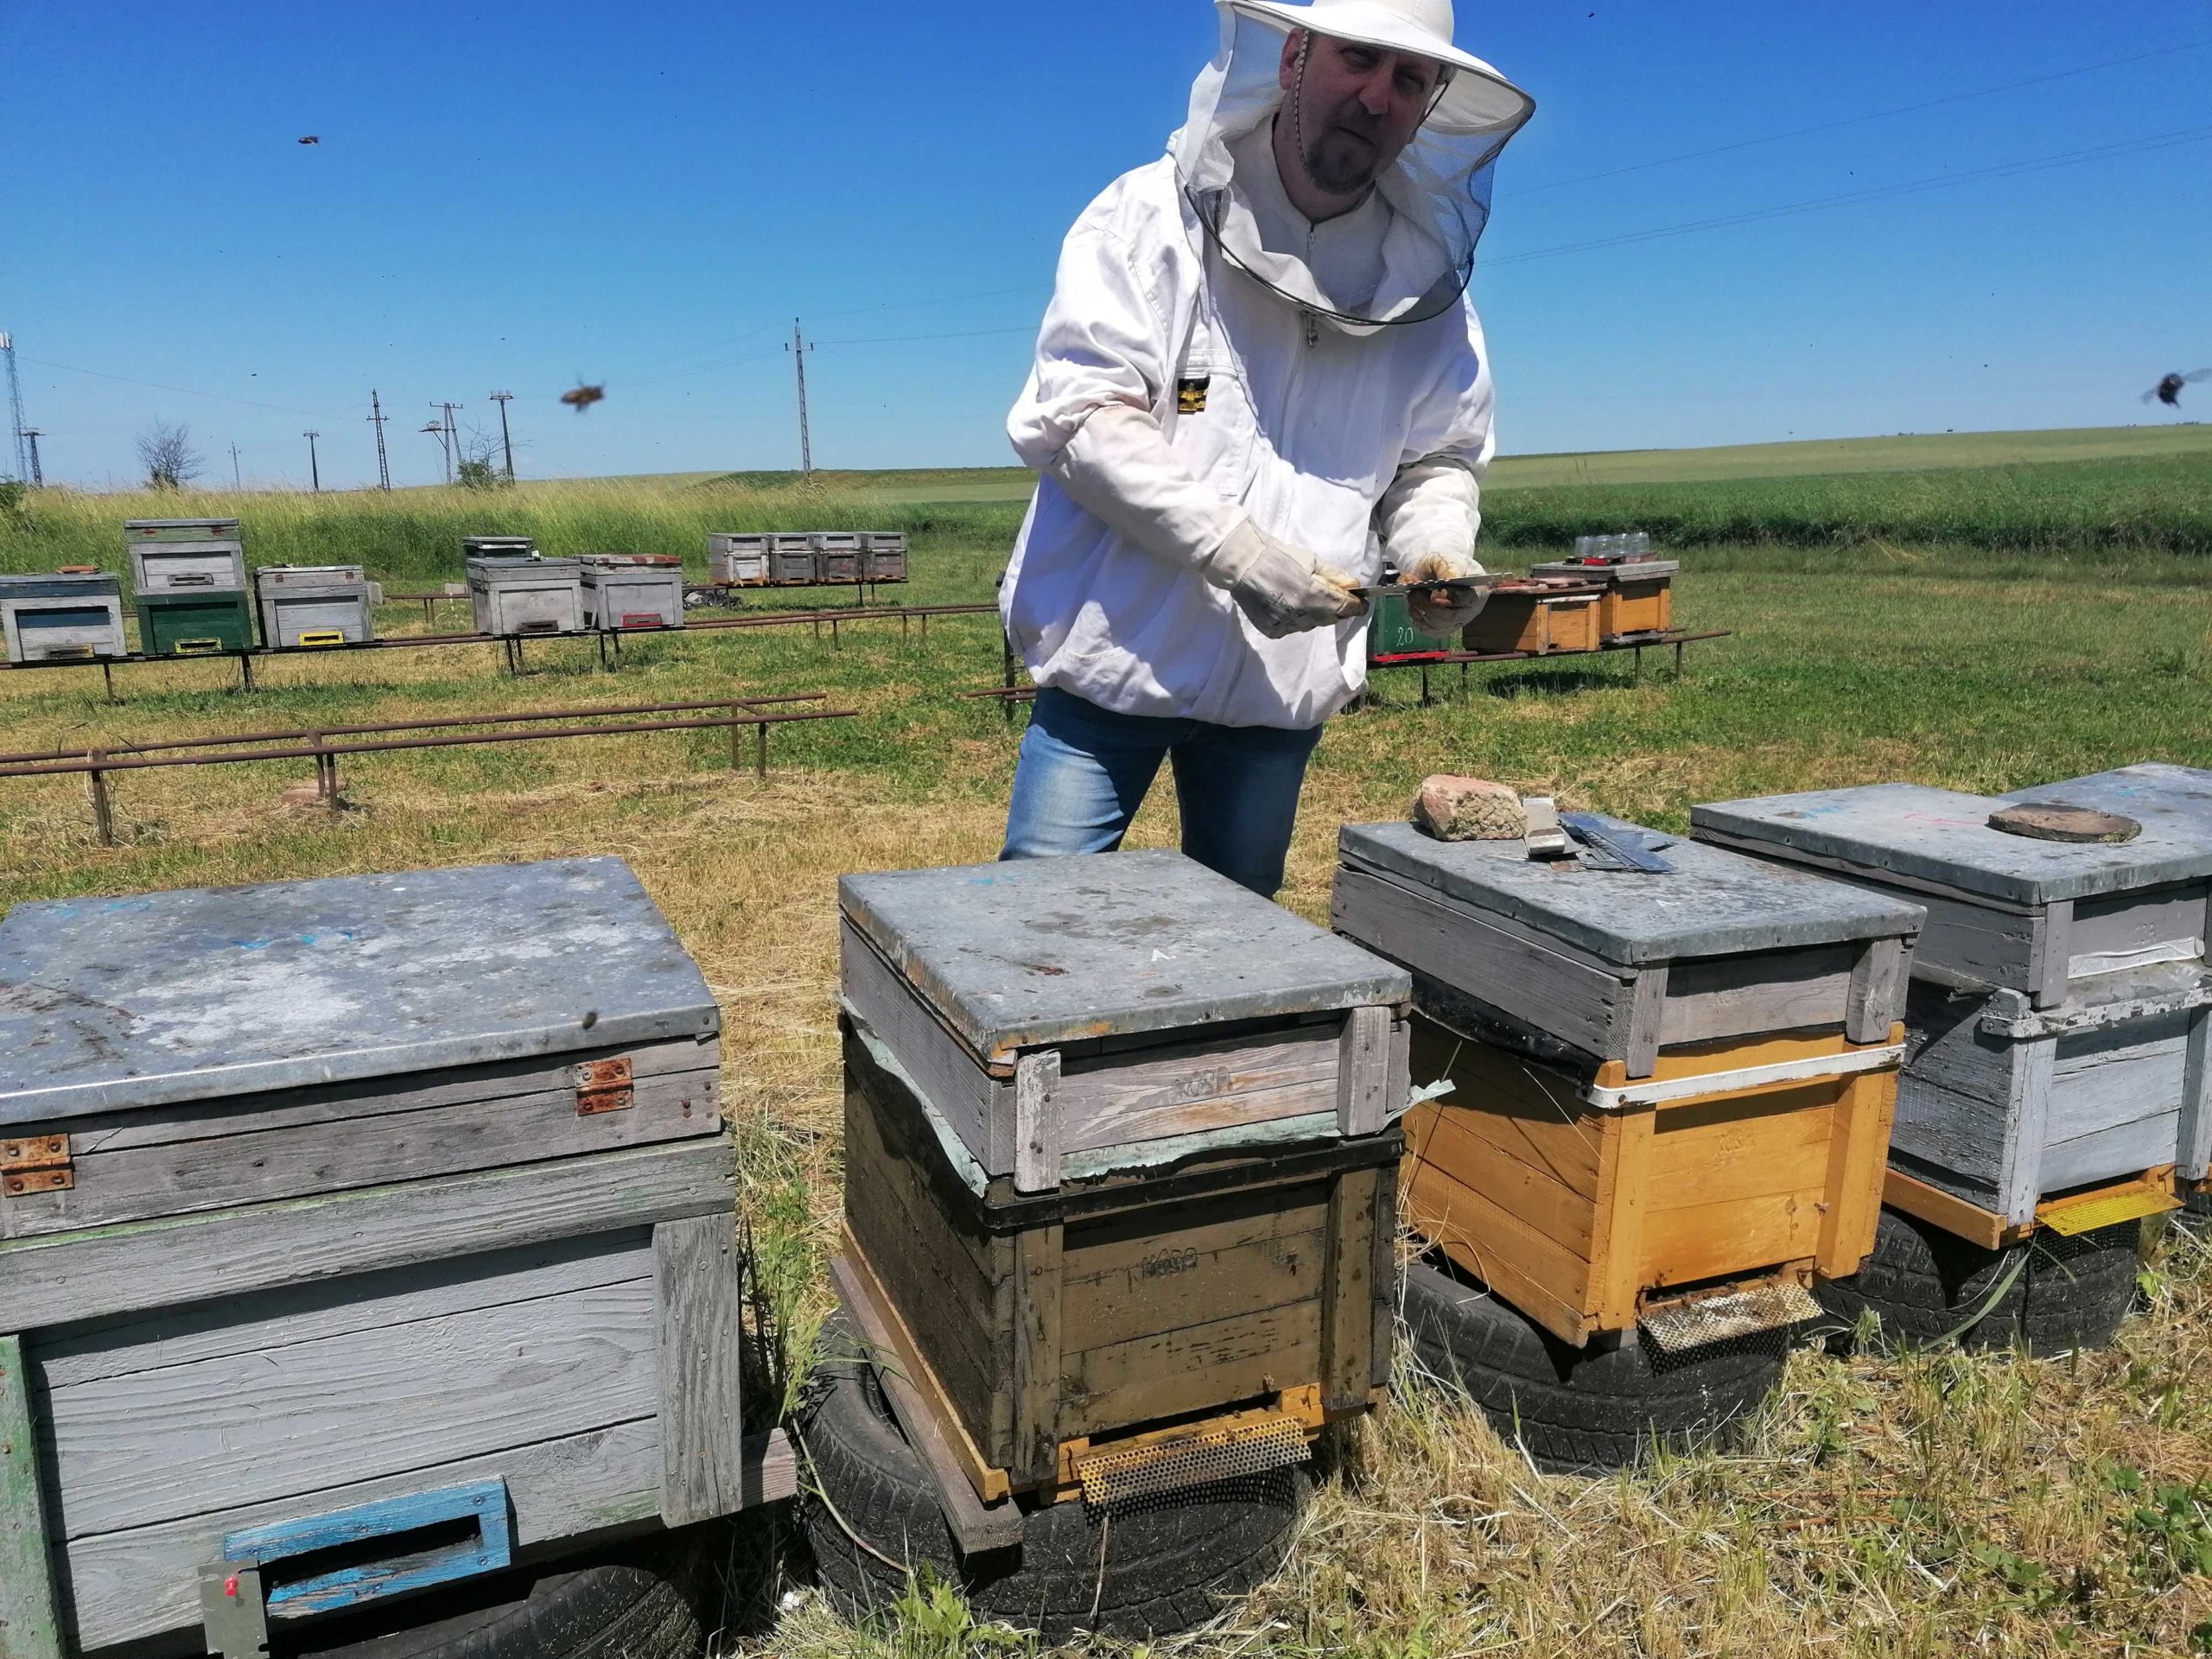 Egy védőruhát viselő méhész egy méhkassorra hajlamos a szabad területen. Az ég tiszta és kék, a háttérben még több méhkas látható. A méhész egy szerszámot tart a kezében, és úgy tűnik, az egyik kaptárral dolgozik.